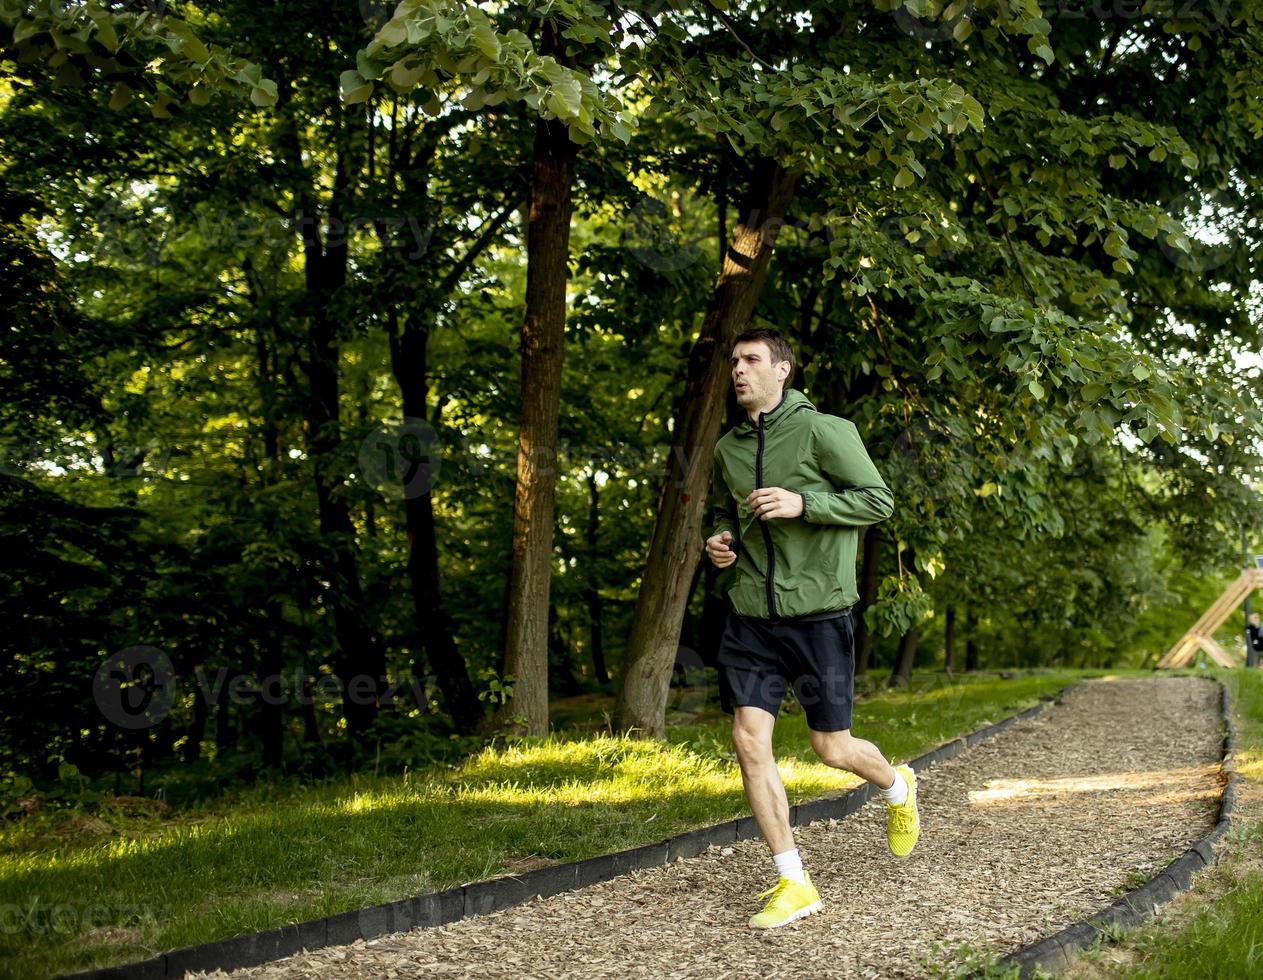 Atlético joven corriendo mientras hace ejercicio en el soleado parque verde foto